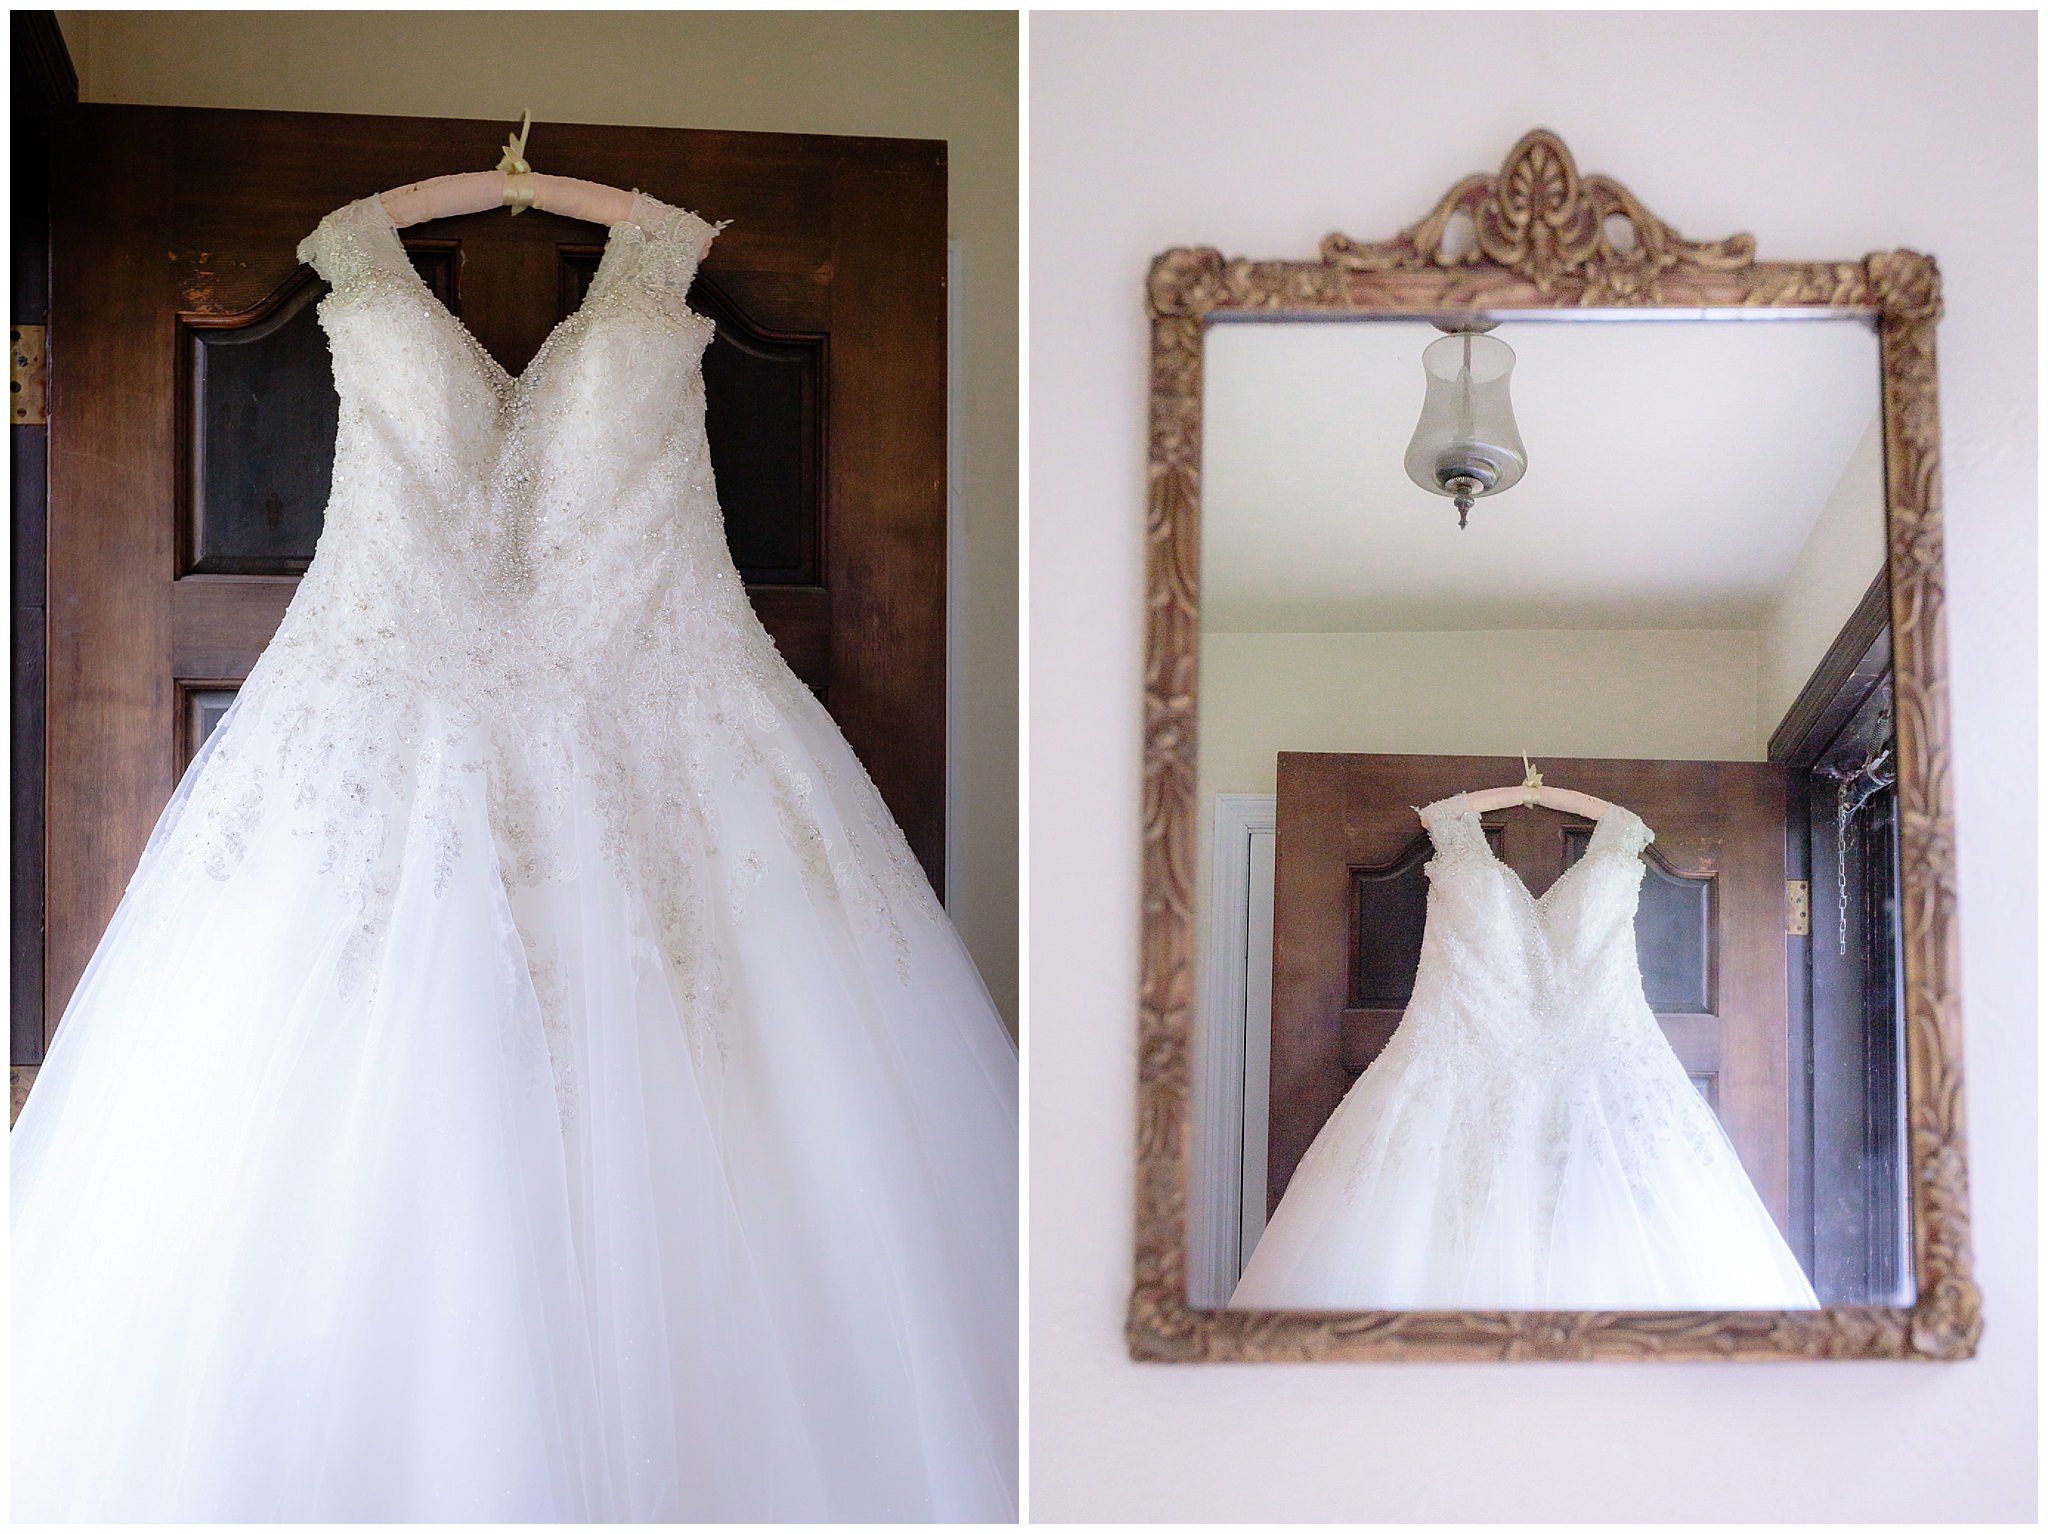 Bride's Allure bridal gown hangs from her front door